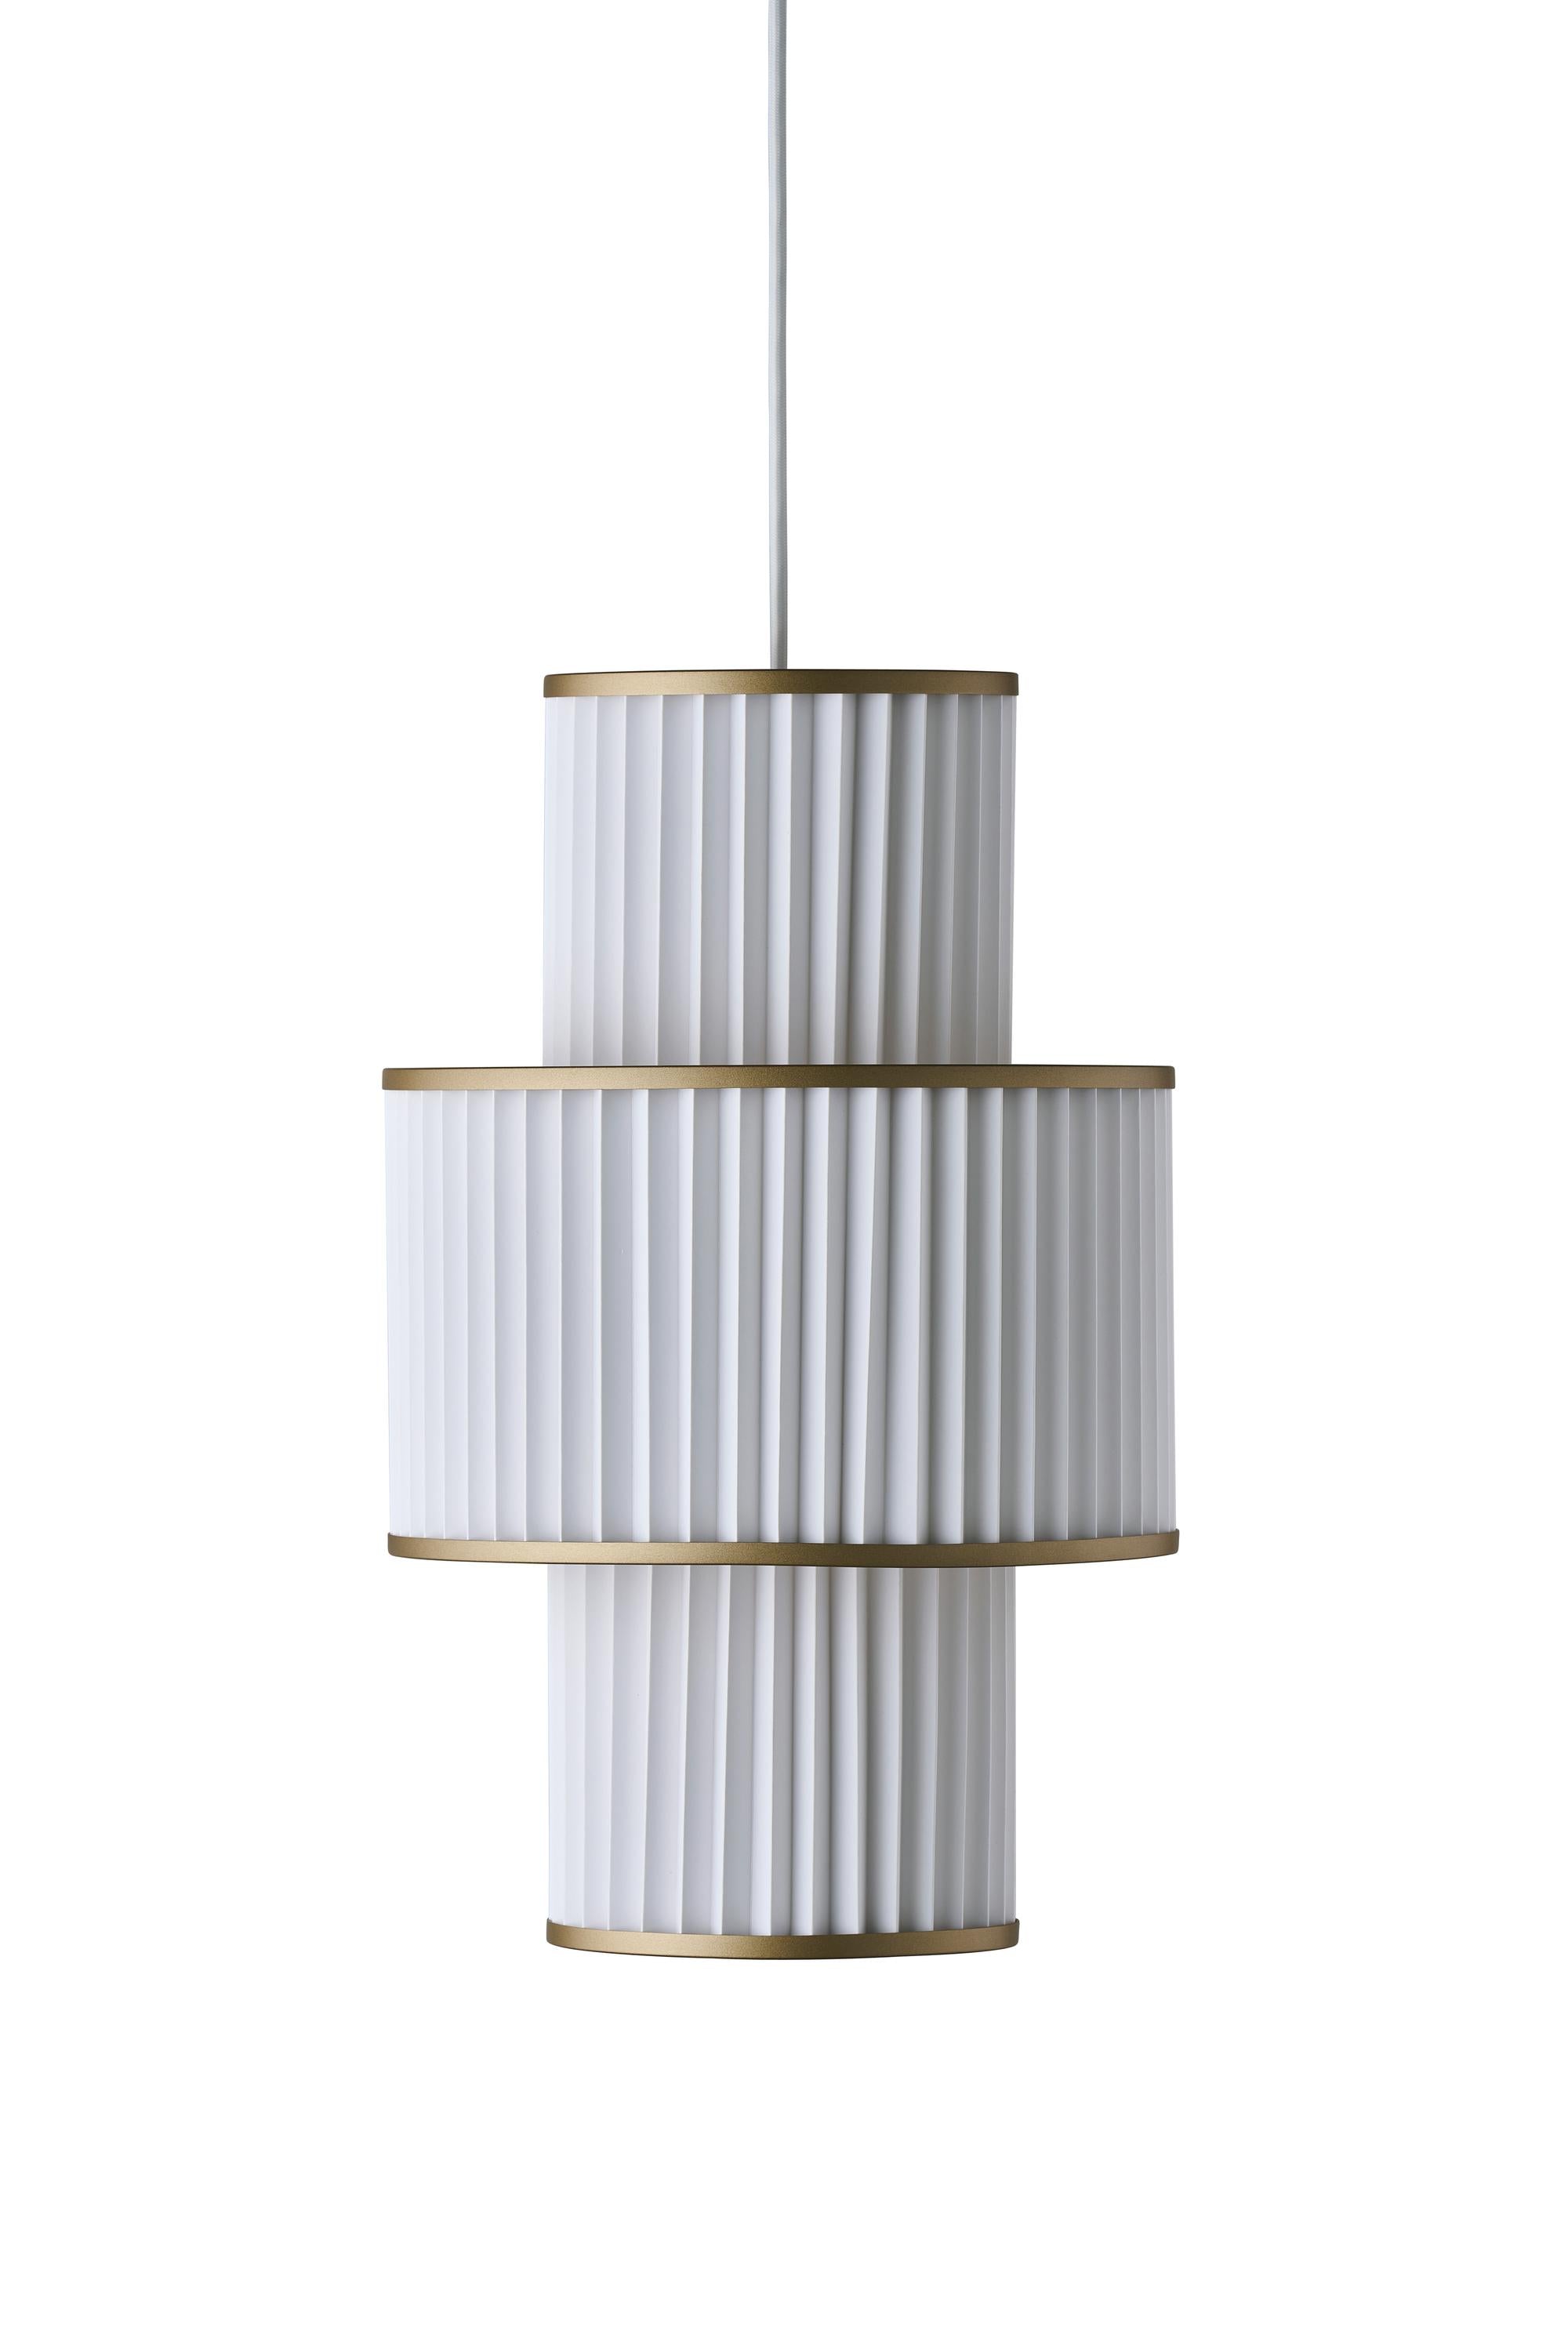 Le Klint Plivello Suspension Lamp Golden/White med 3 nuancer (S M S)